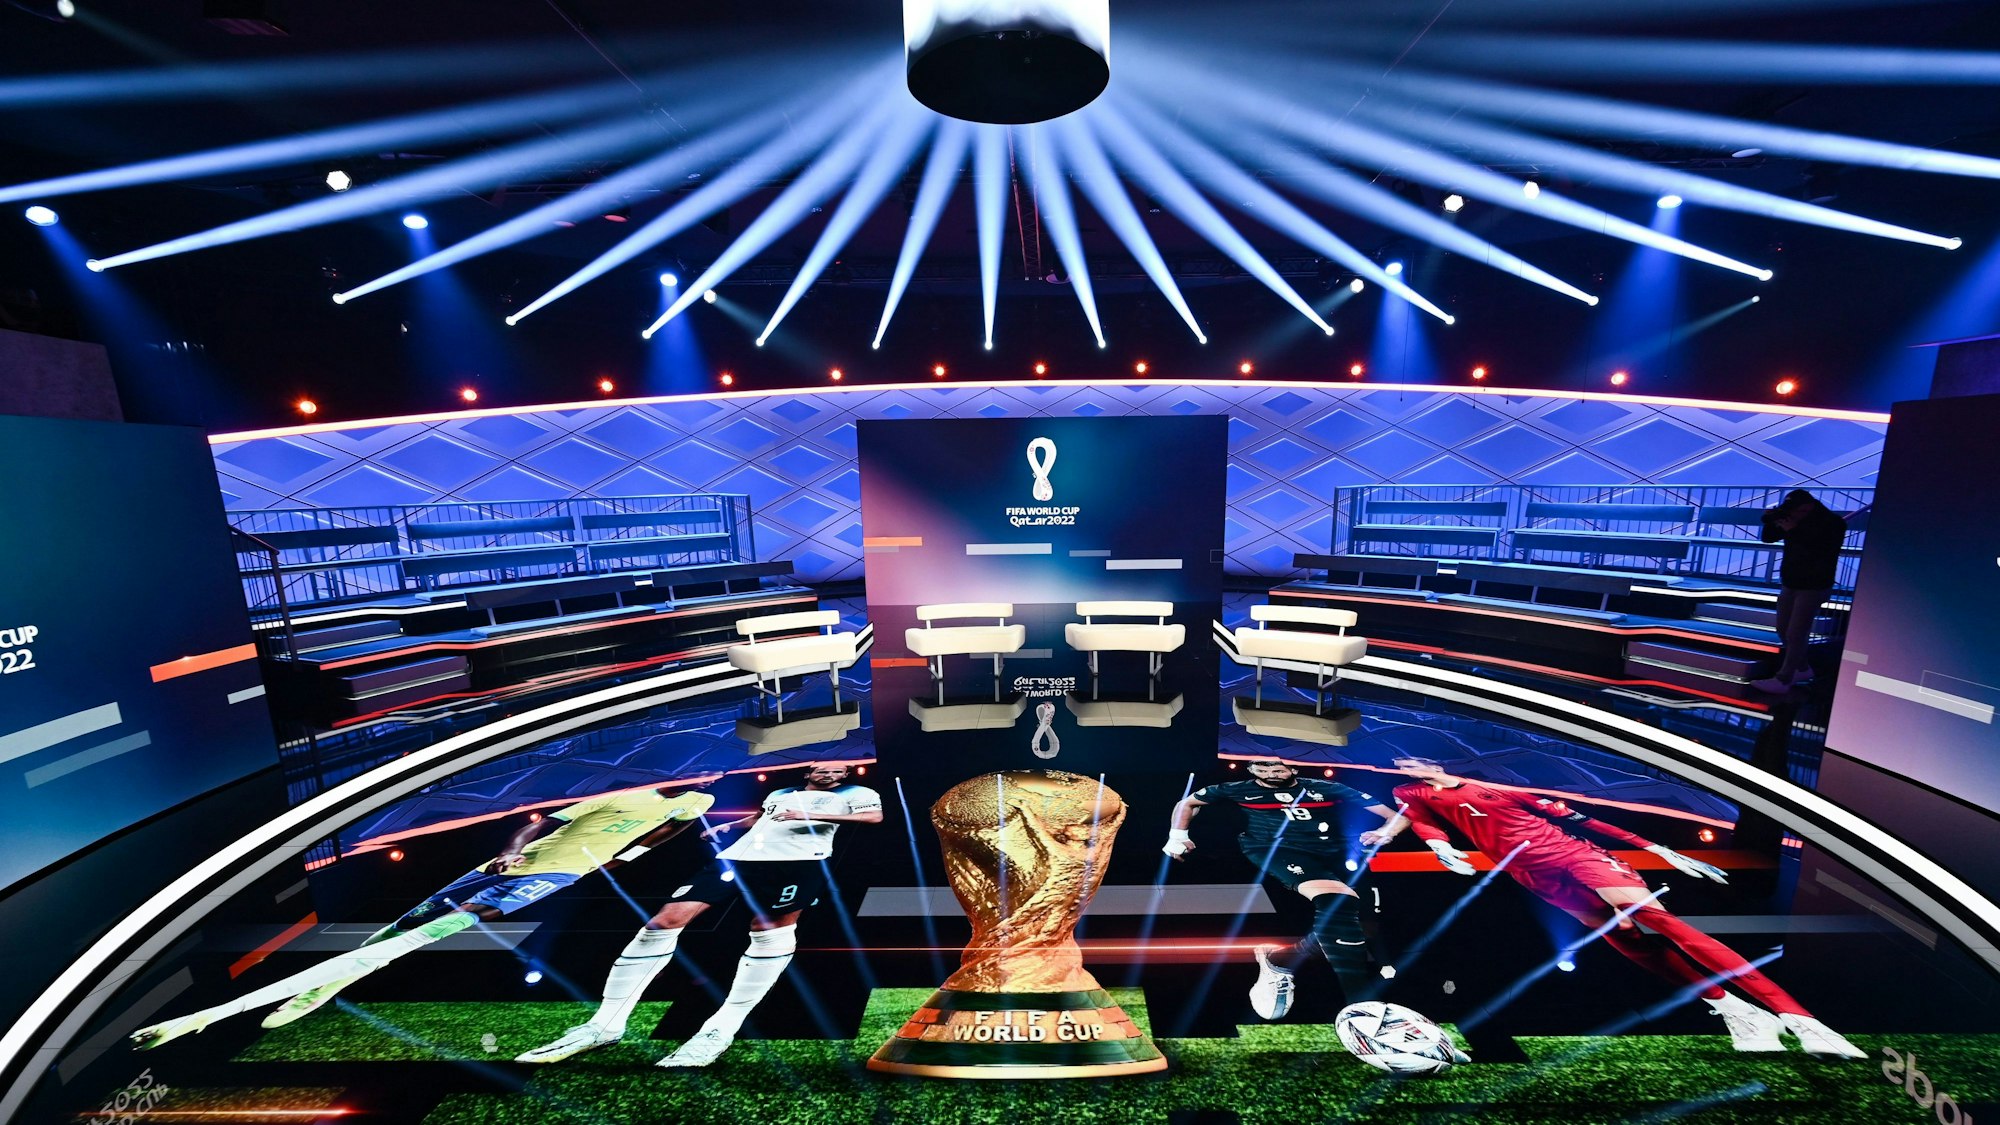 Das WM-Studio von Ard und ZDF ist in einem Halbkreis aufgebaut. Auf dem Boden werden verschiedene WM-Stars um den WM-Pokal her projiziert. Das Studio ist durch die Beleuchtung in ein dunkles Blau getönt.